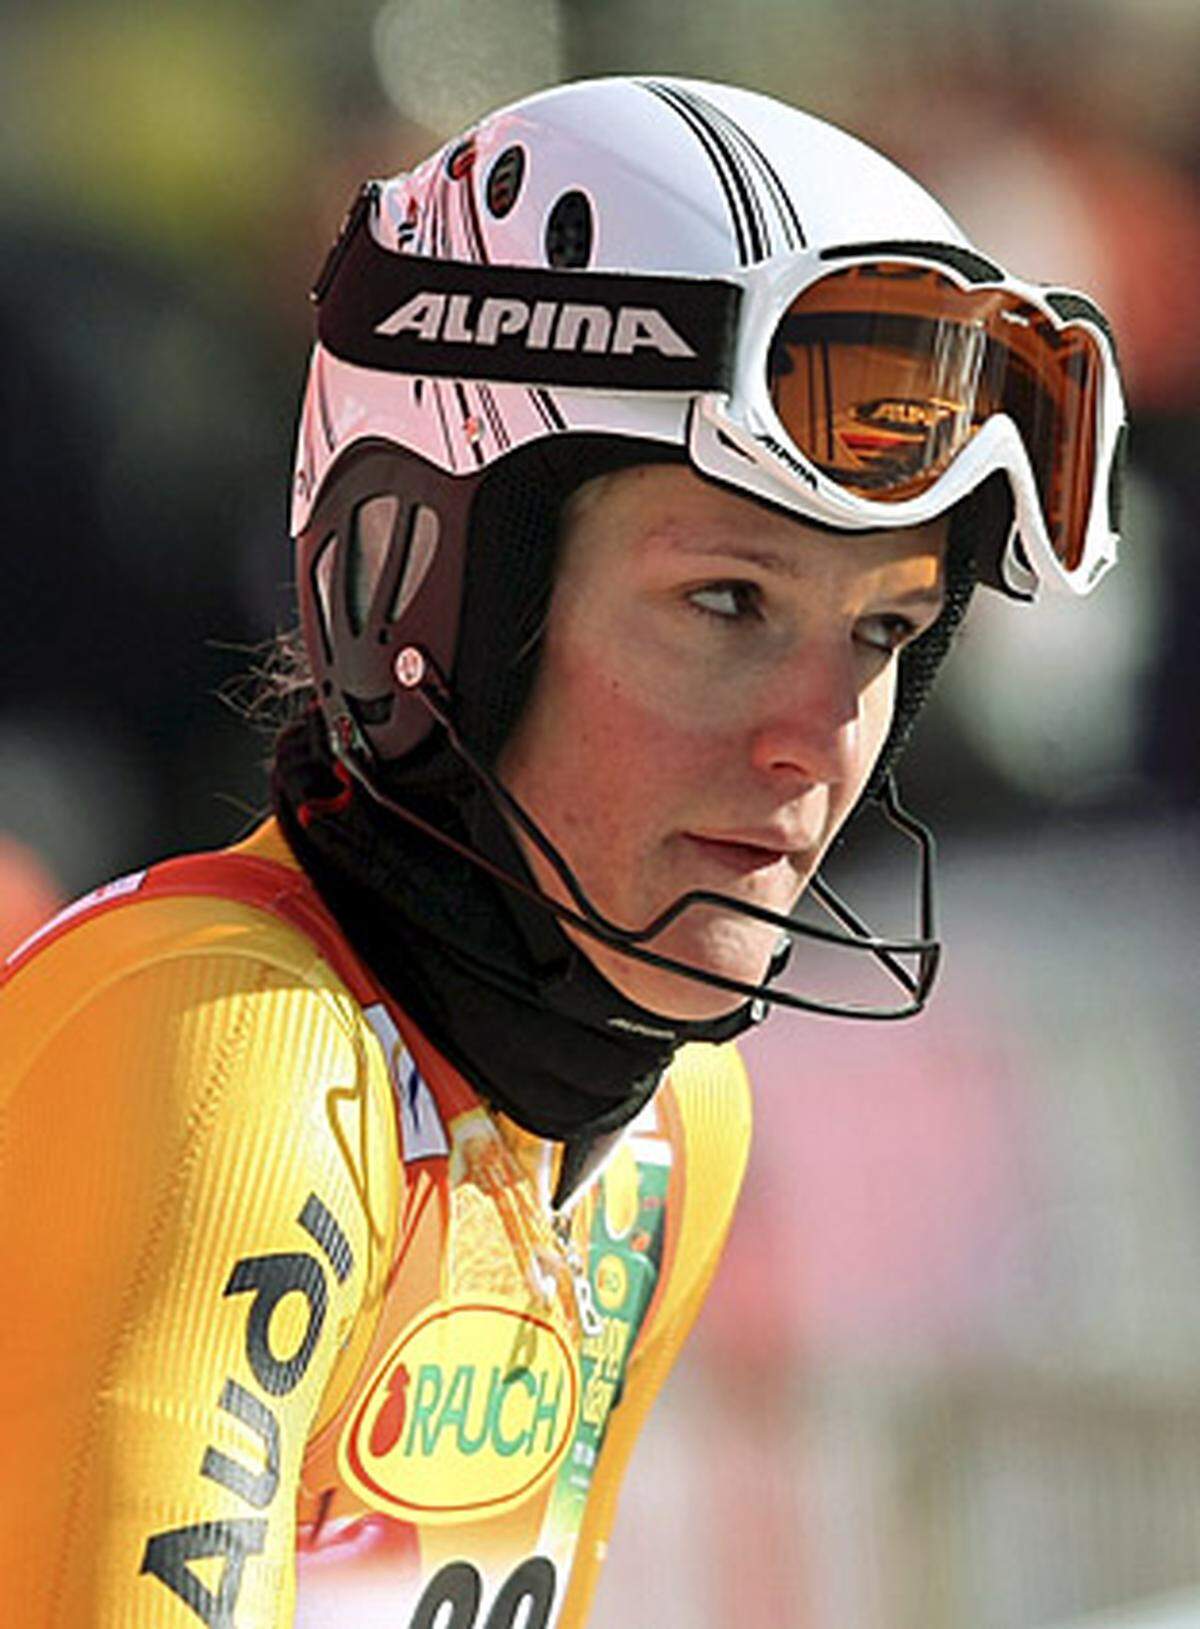 Auch die vierfache Slalom-Saisonsiegerin Maria Riesch konnte da nicht mithalten. Mit 55,63 Sekunden verlor sie fast vier Zehntel auf ihre Freundin Vonn. Zur Halbzeit war Riesch "nur" Sechste.